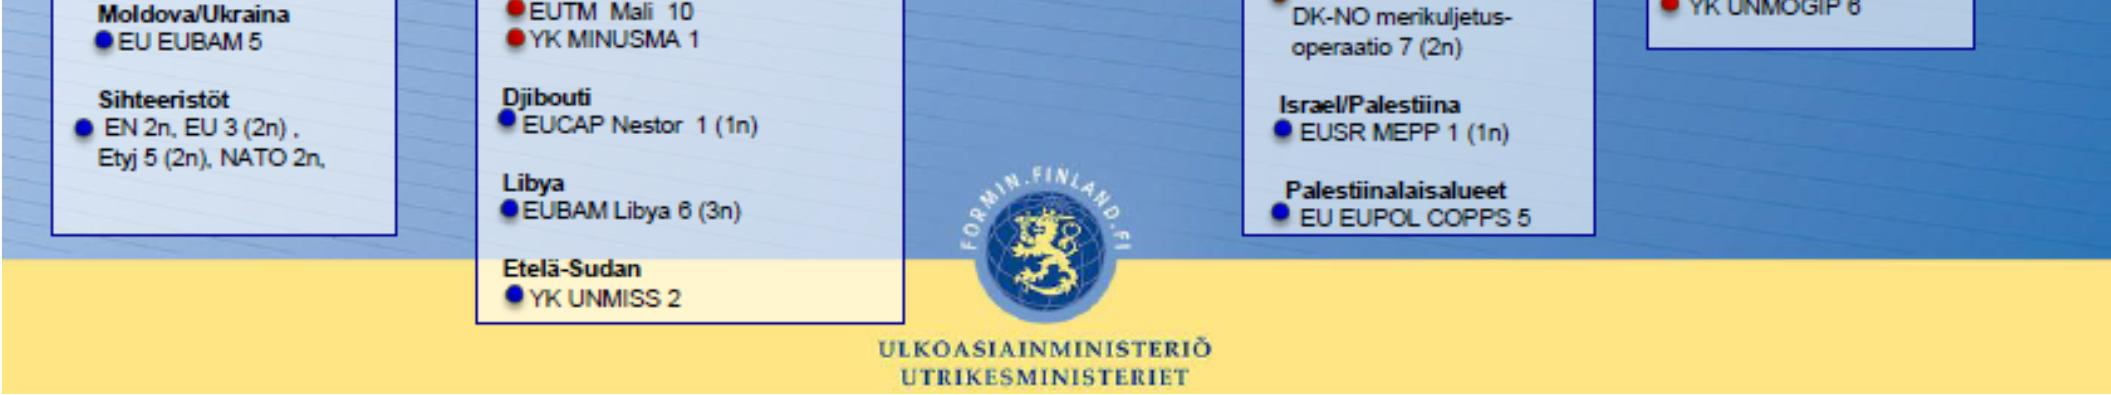 Tavoitteena on saada Etyjin roolista ja suunnasta tuloksia vuoteen 2015 mennessä, jolloin tulee kuluneeksi 40 vuotta Helsingin päätösasiakirjan allekirjoittamisesta.